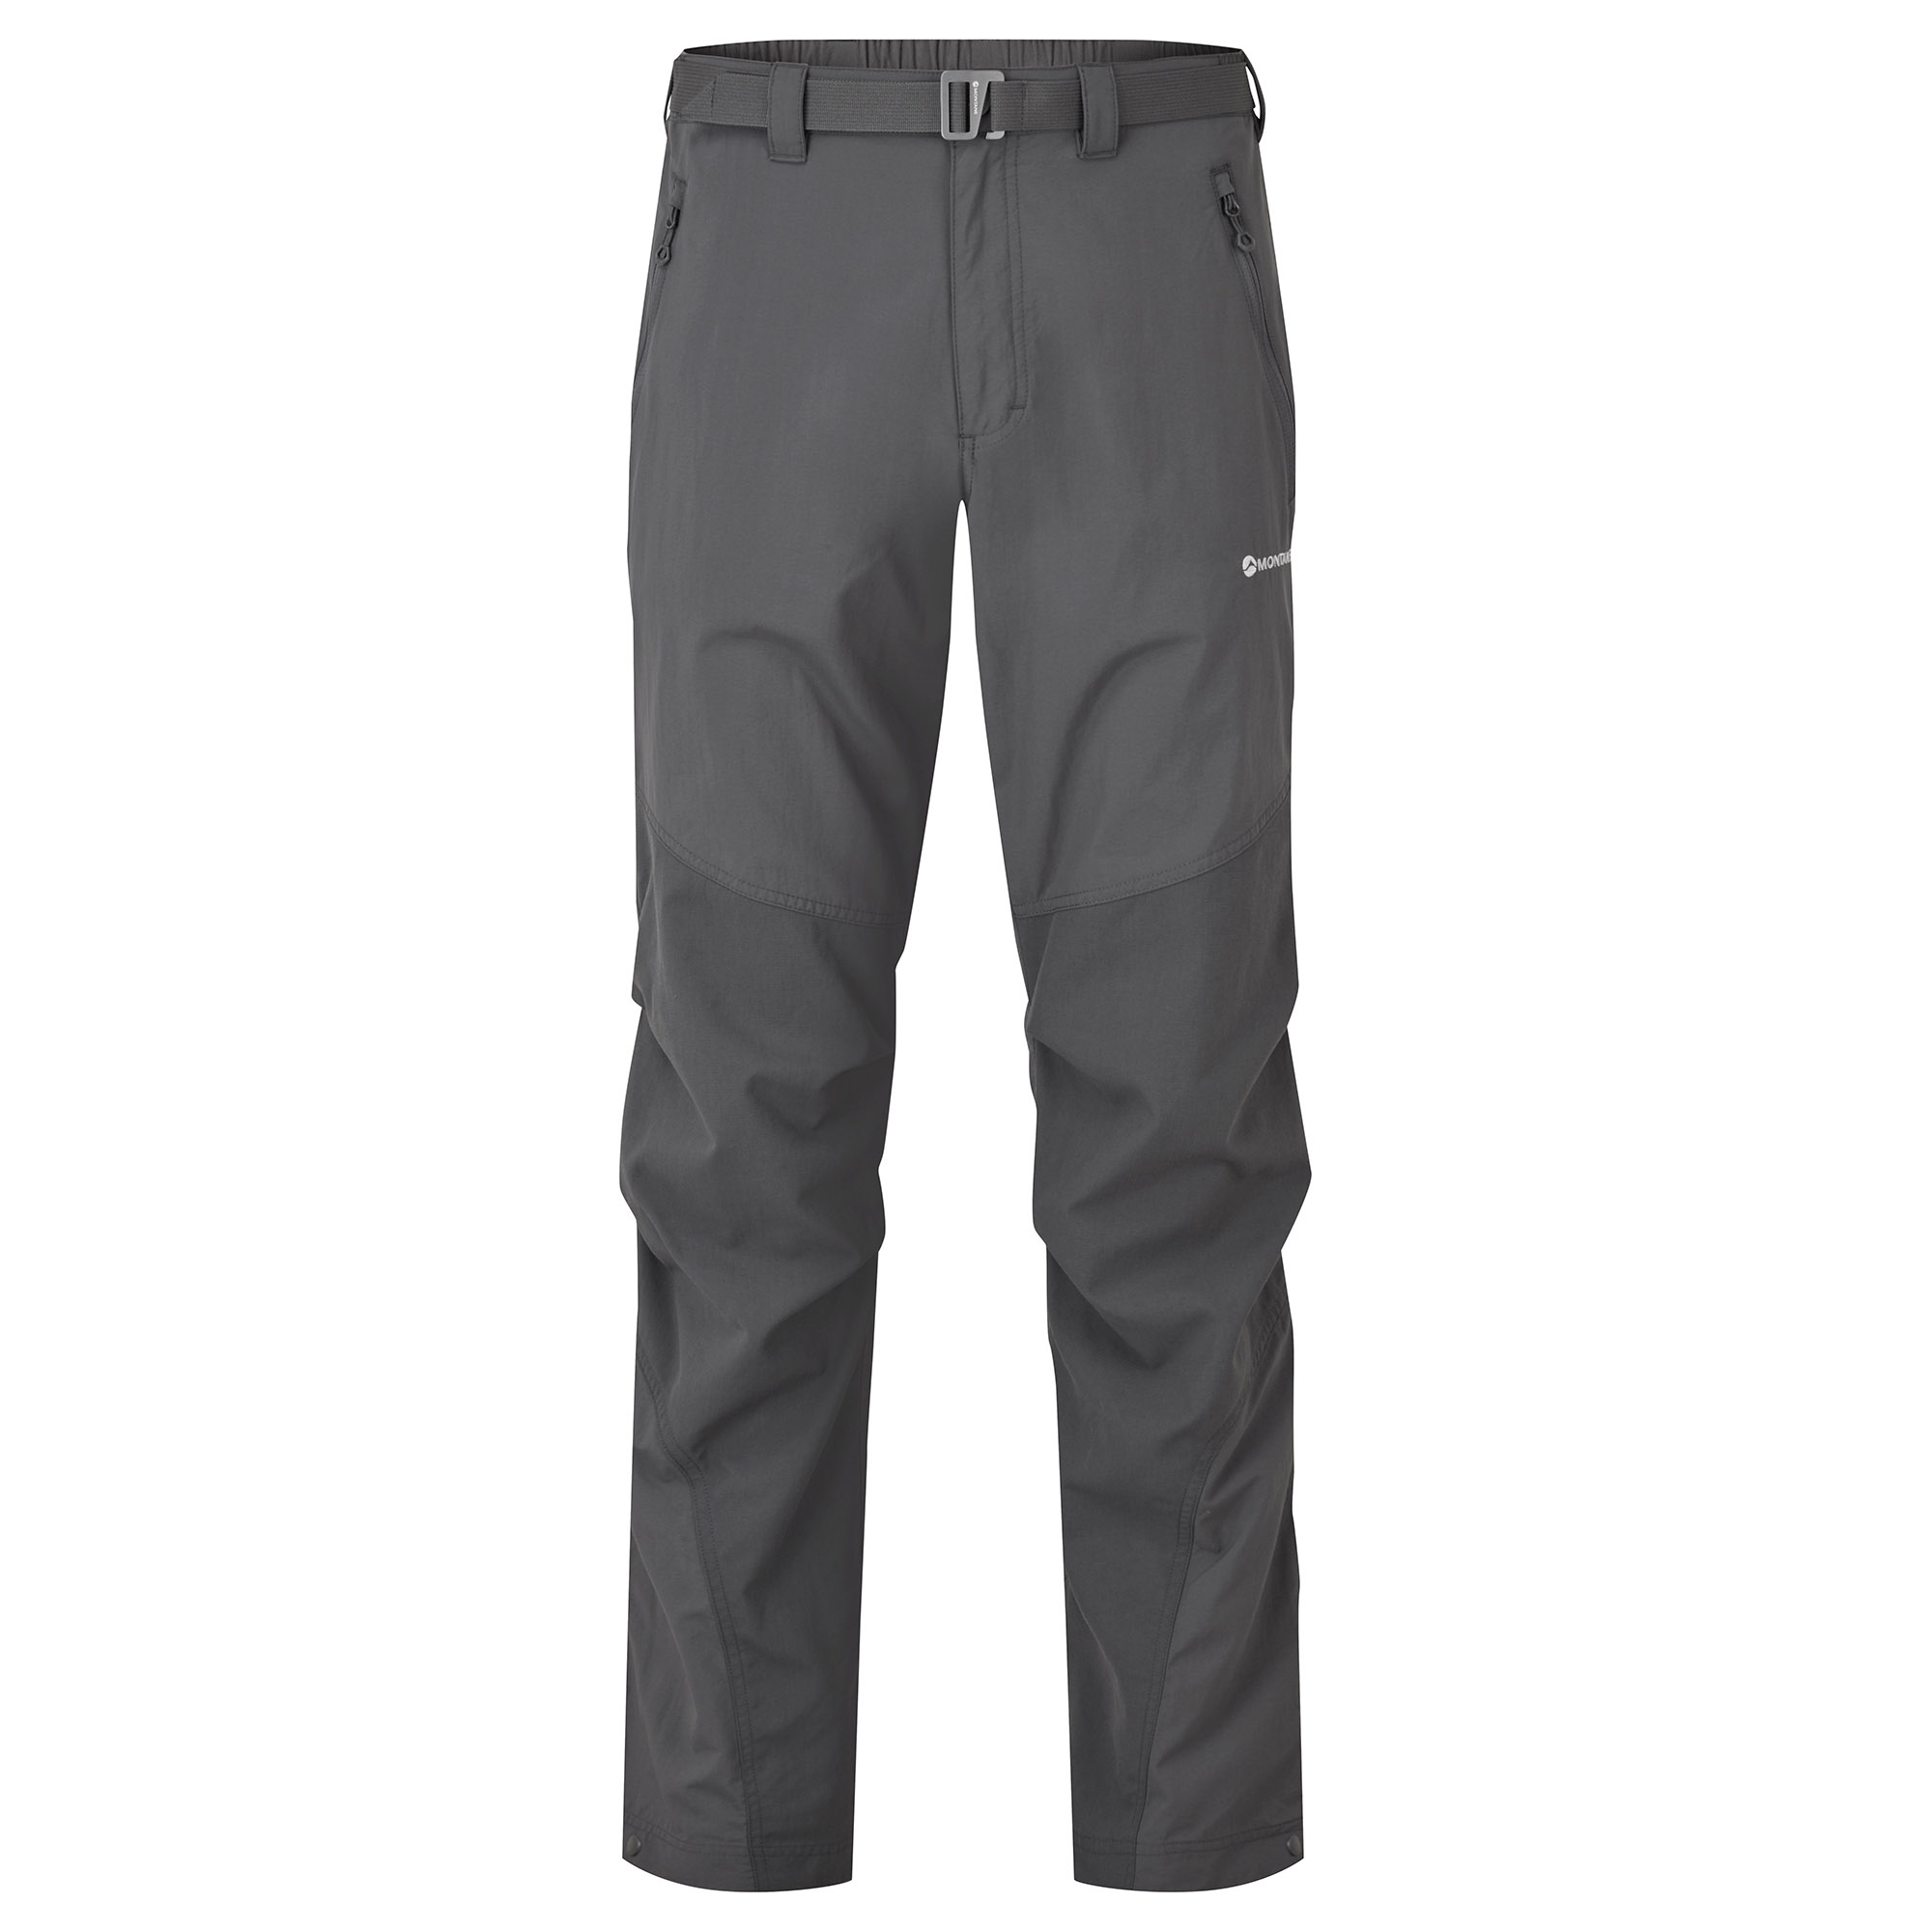 Montane pánské softshellové kalhoty Terra Pants - Zkrácené Nohavice Barva: Slate, Velikost: 36